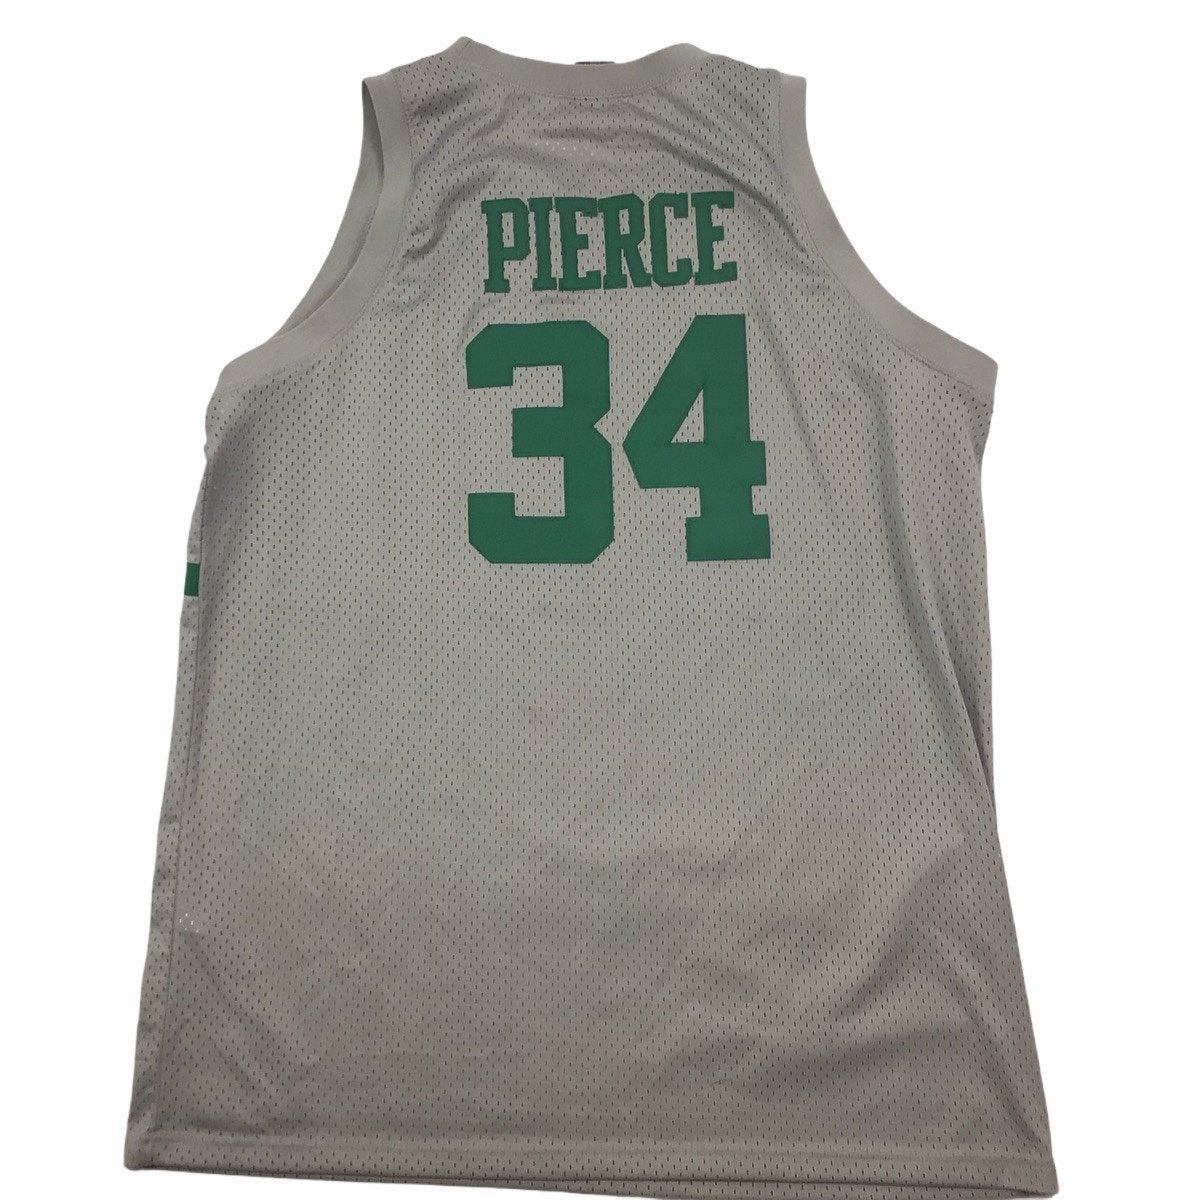 Paul Pierce Boston Celtics Nike Jersey Sz. XXXL – Throwback